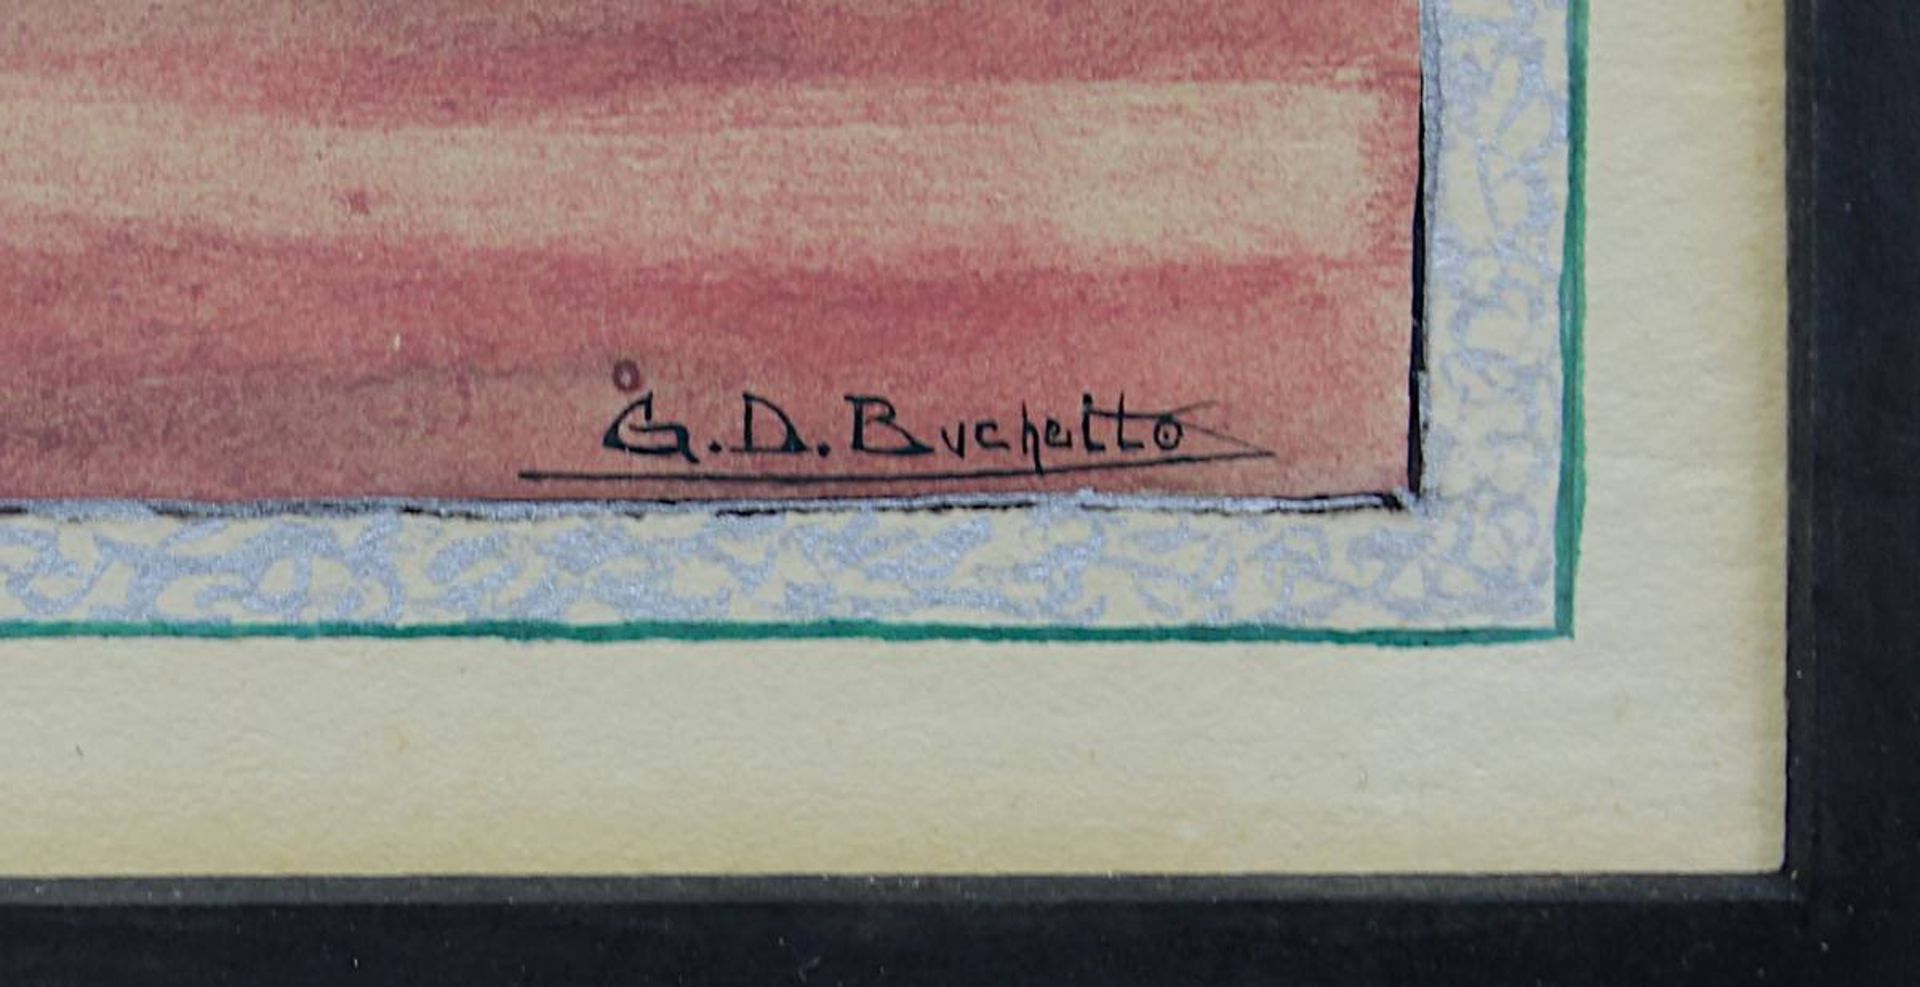 Buchetto, G. D. (Künstler um 1920/30), Darstellung eines eleganten Paares in einer Loge, Aquarell, - Image 3 of 3